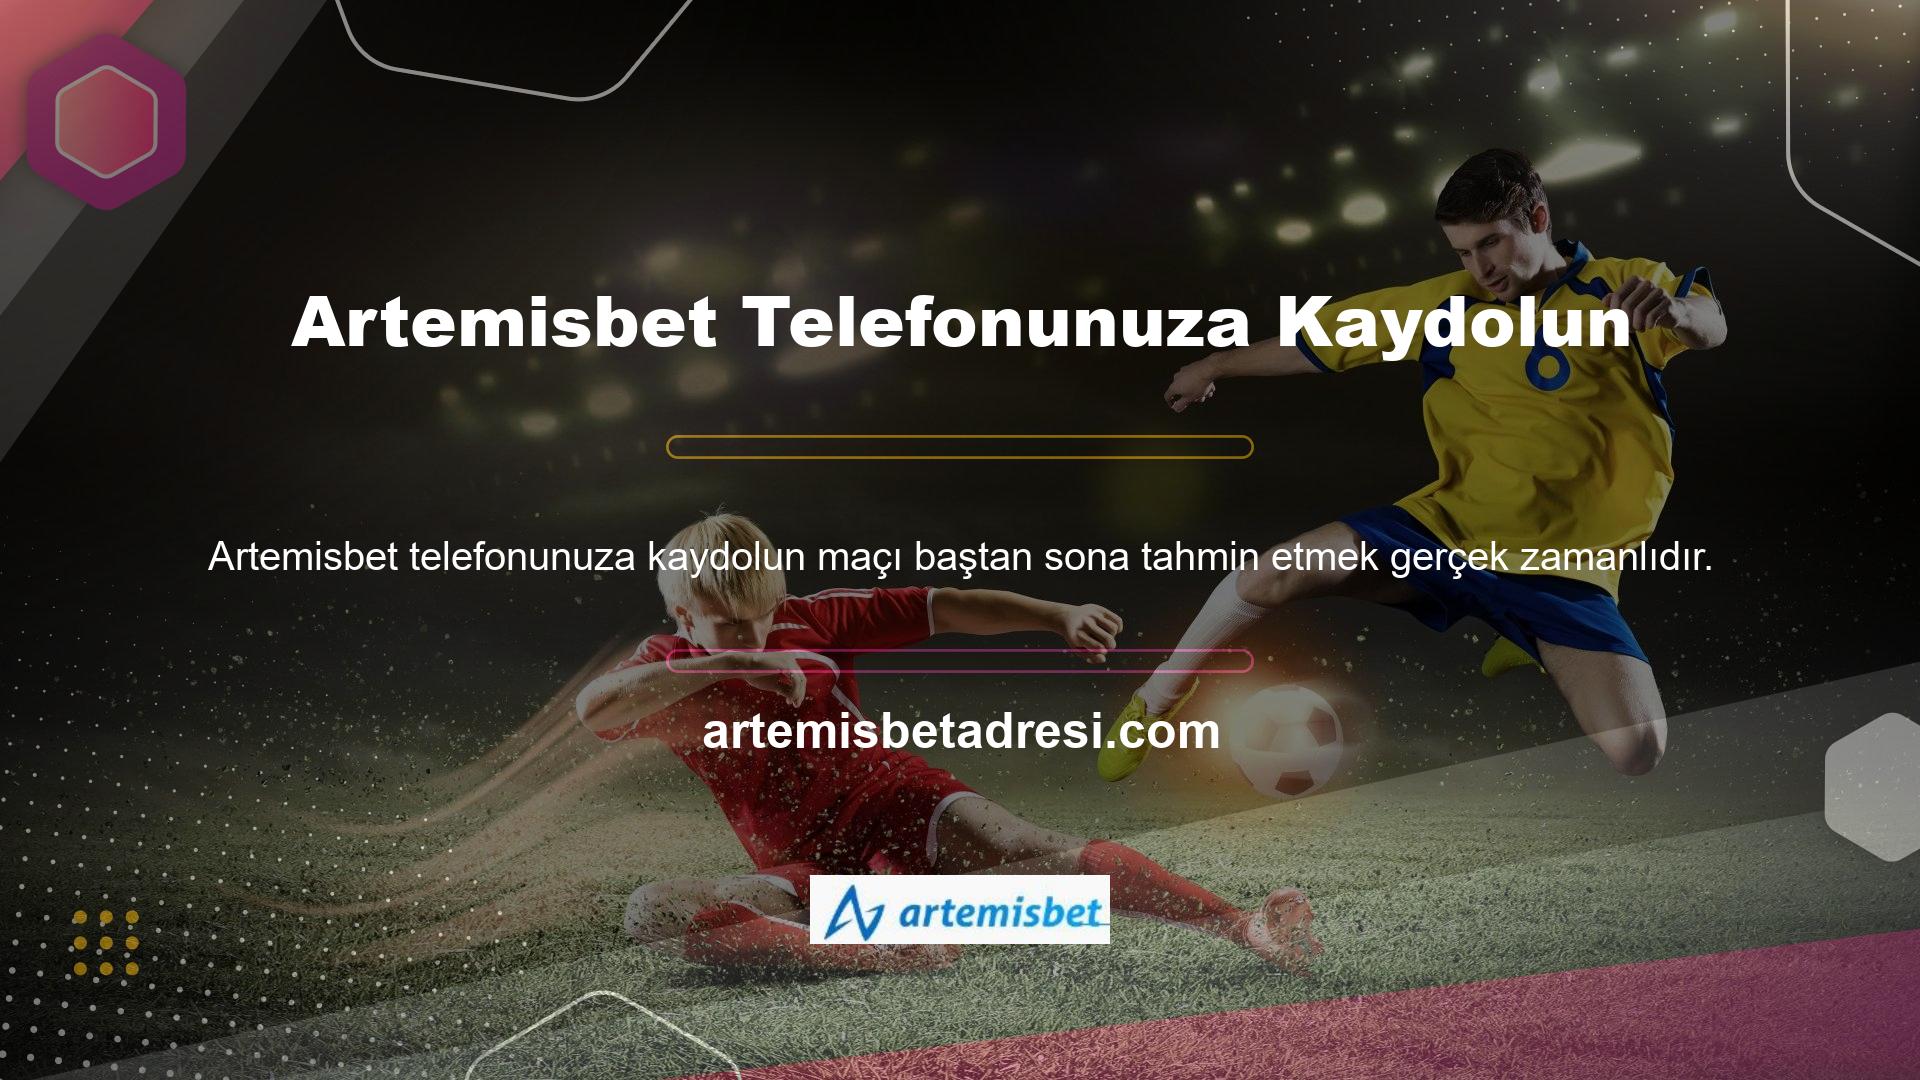 Türk kullanıcılar için en fazla spor katsayıları tahmini yayınlayan sitelerden biri de sıralama konusunda harika iş çıkaran sitedir